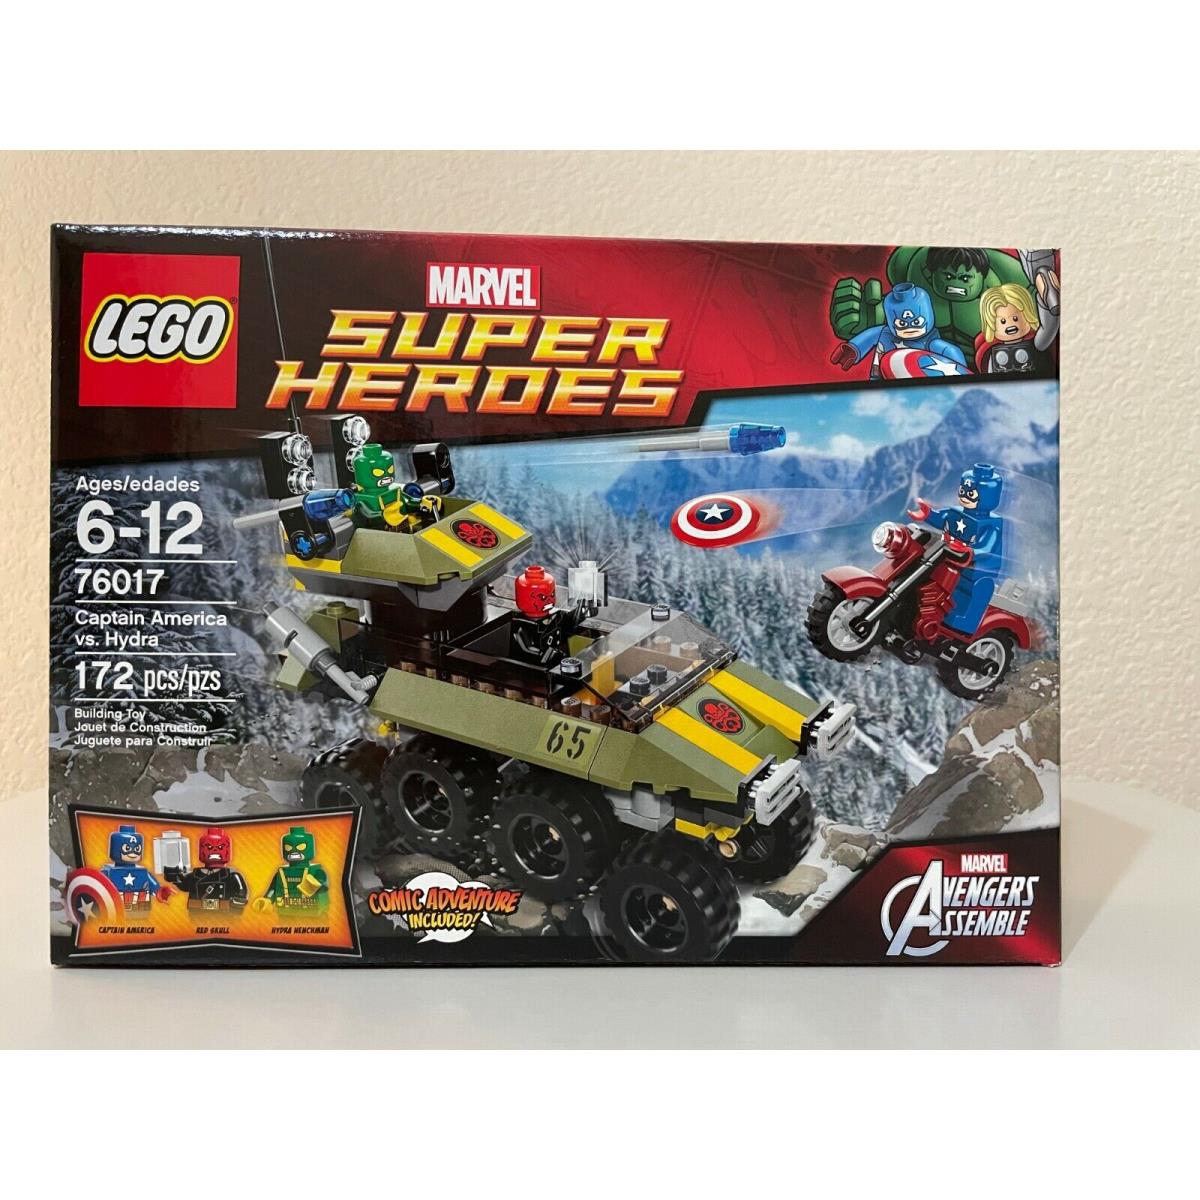 Lego 76017 Super Heroes Marvel Avengers Capt America vs Hydra Set Retired